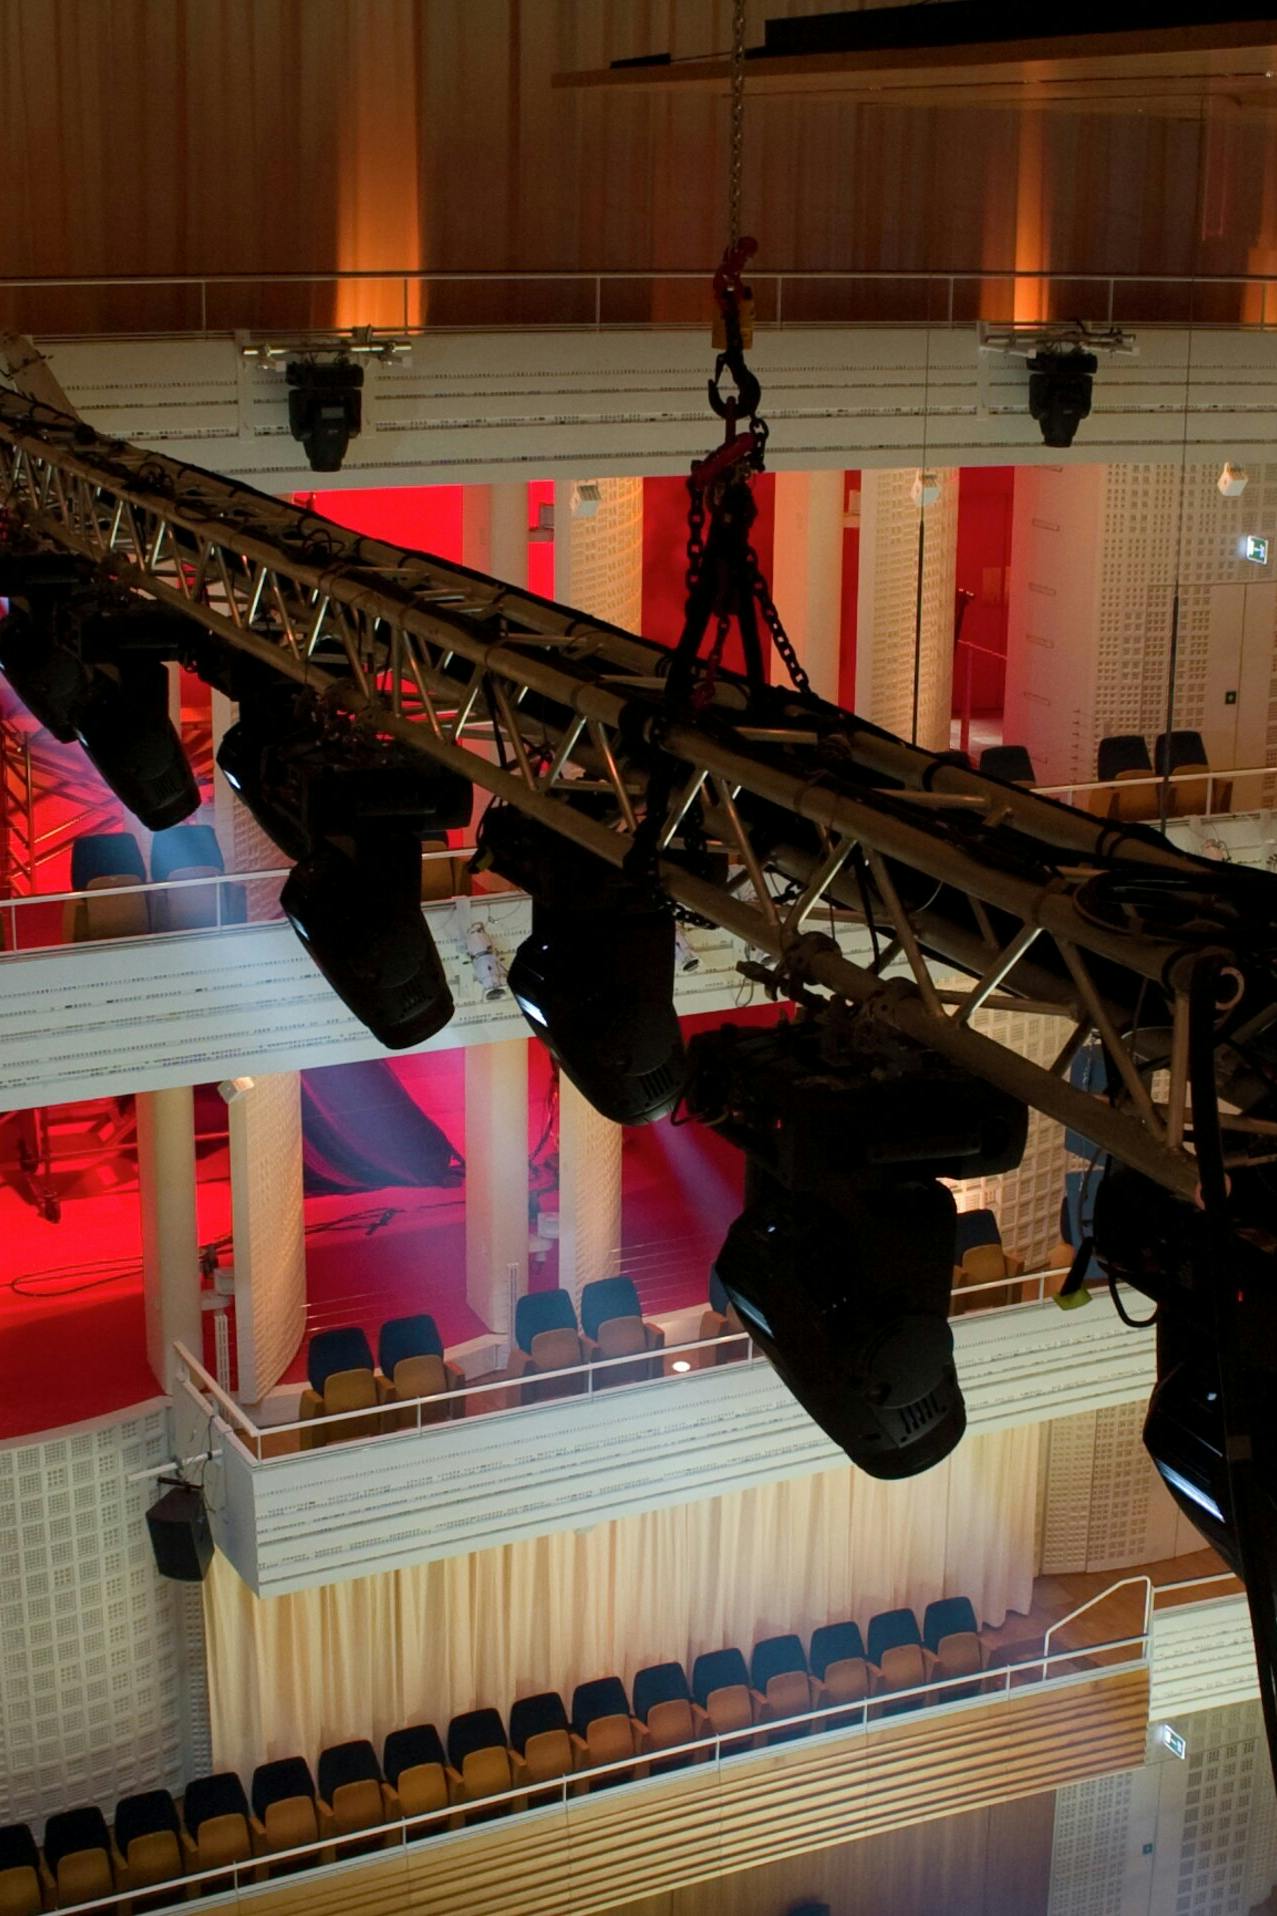 Die Eventtechnik instzeniert schöne Lichtstimmungen im Konzertsaal des KKL Luzern